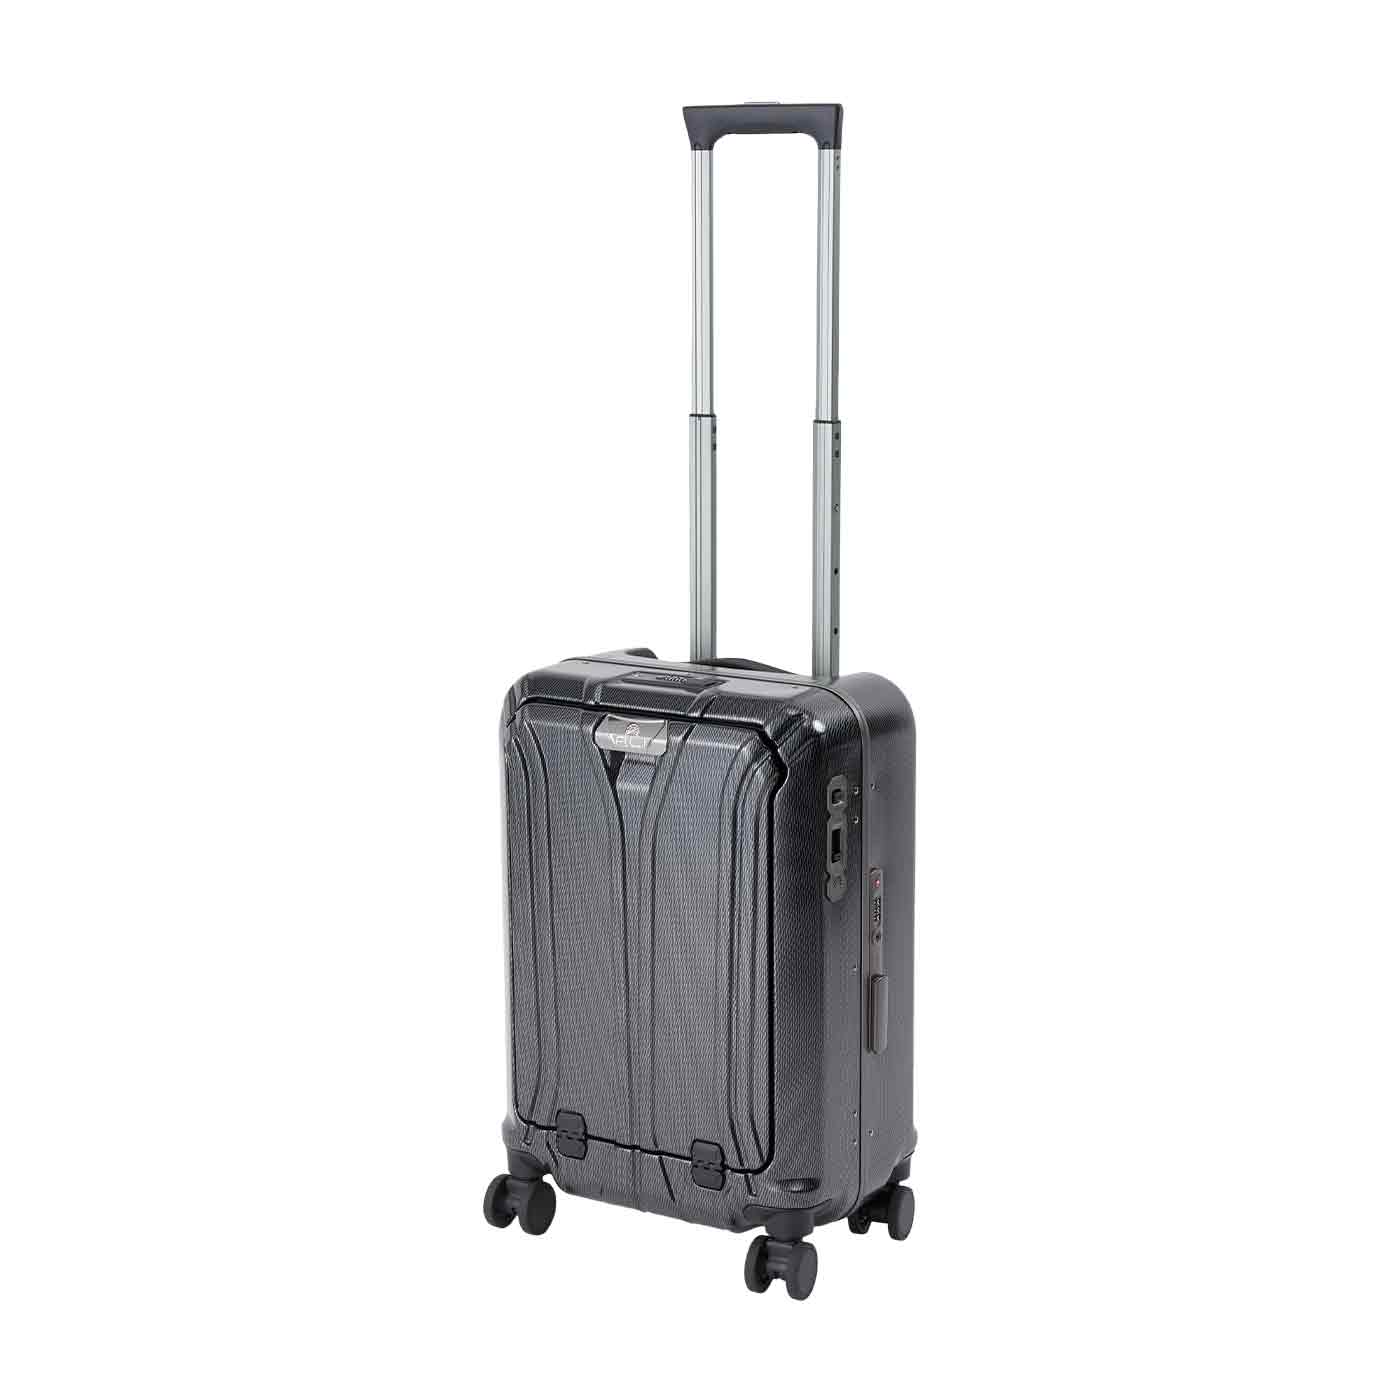 スーツケース・キャリーバッグのおすすめ人気ランキング92選【徹底比較】 | マイベスト